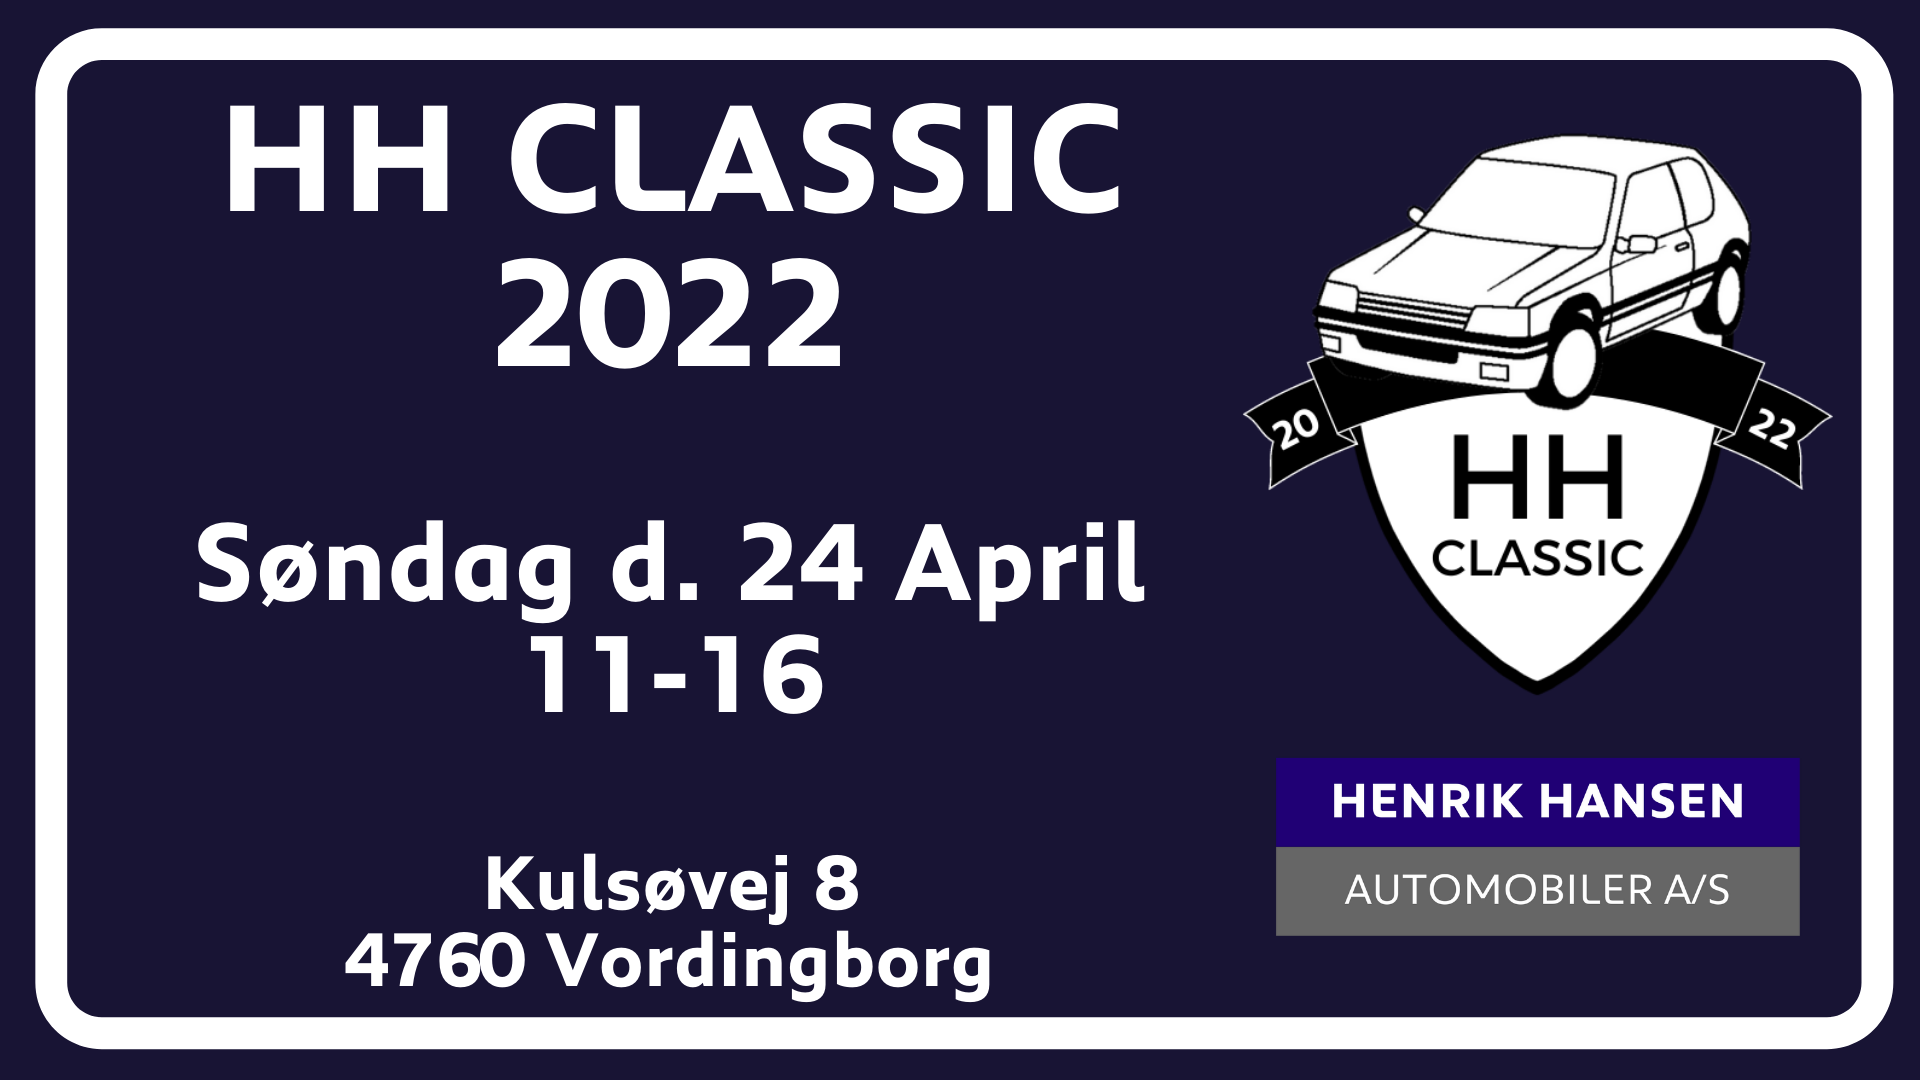 HH Classic 2022